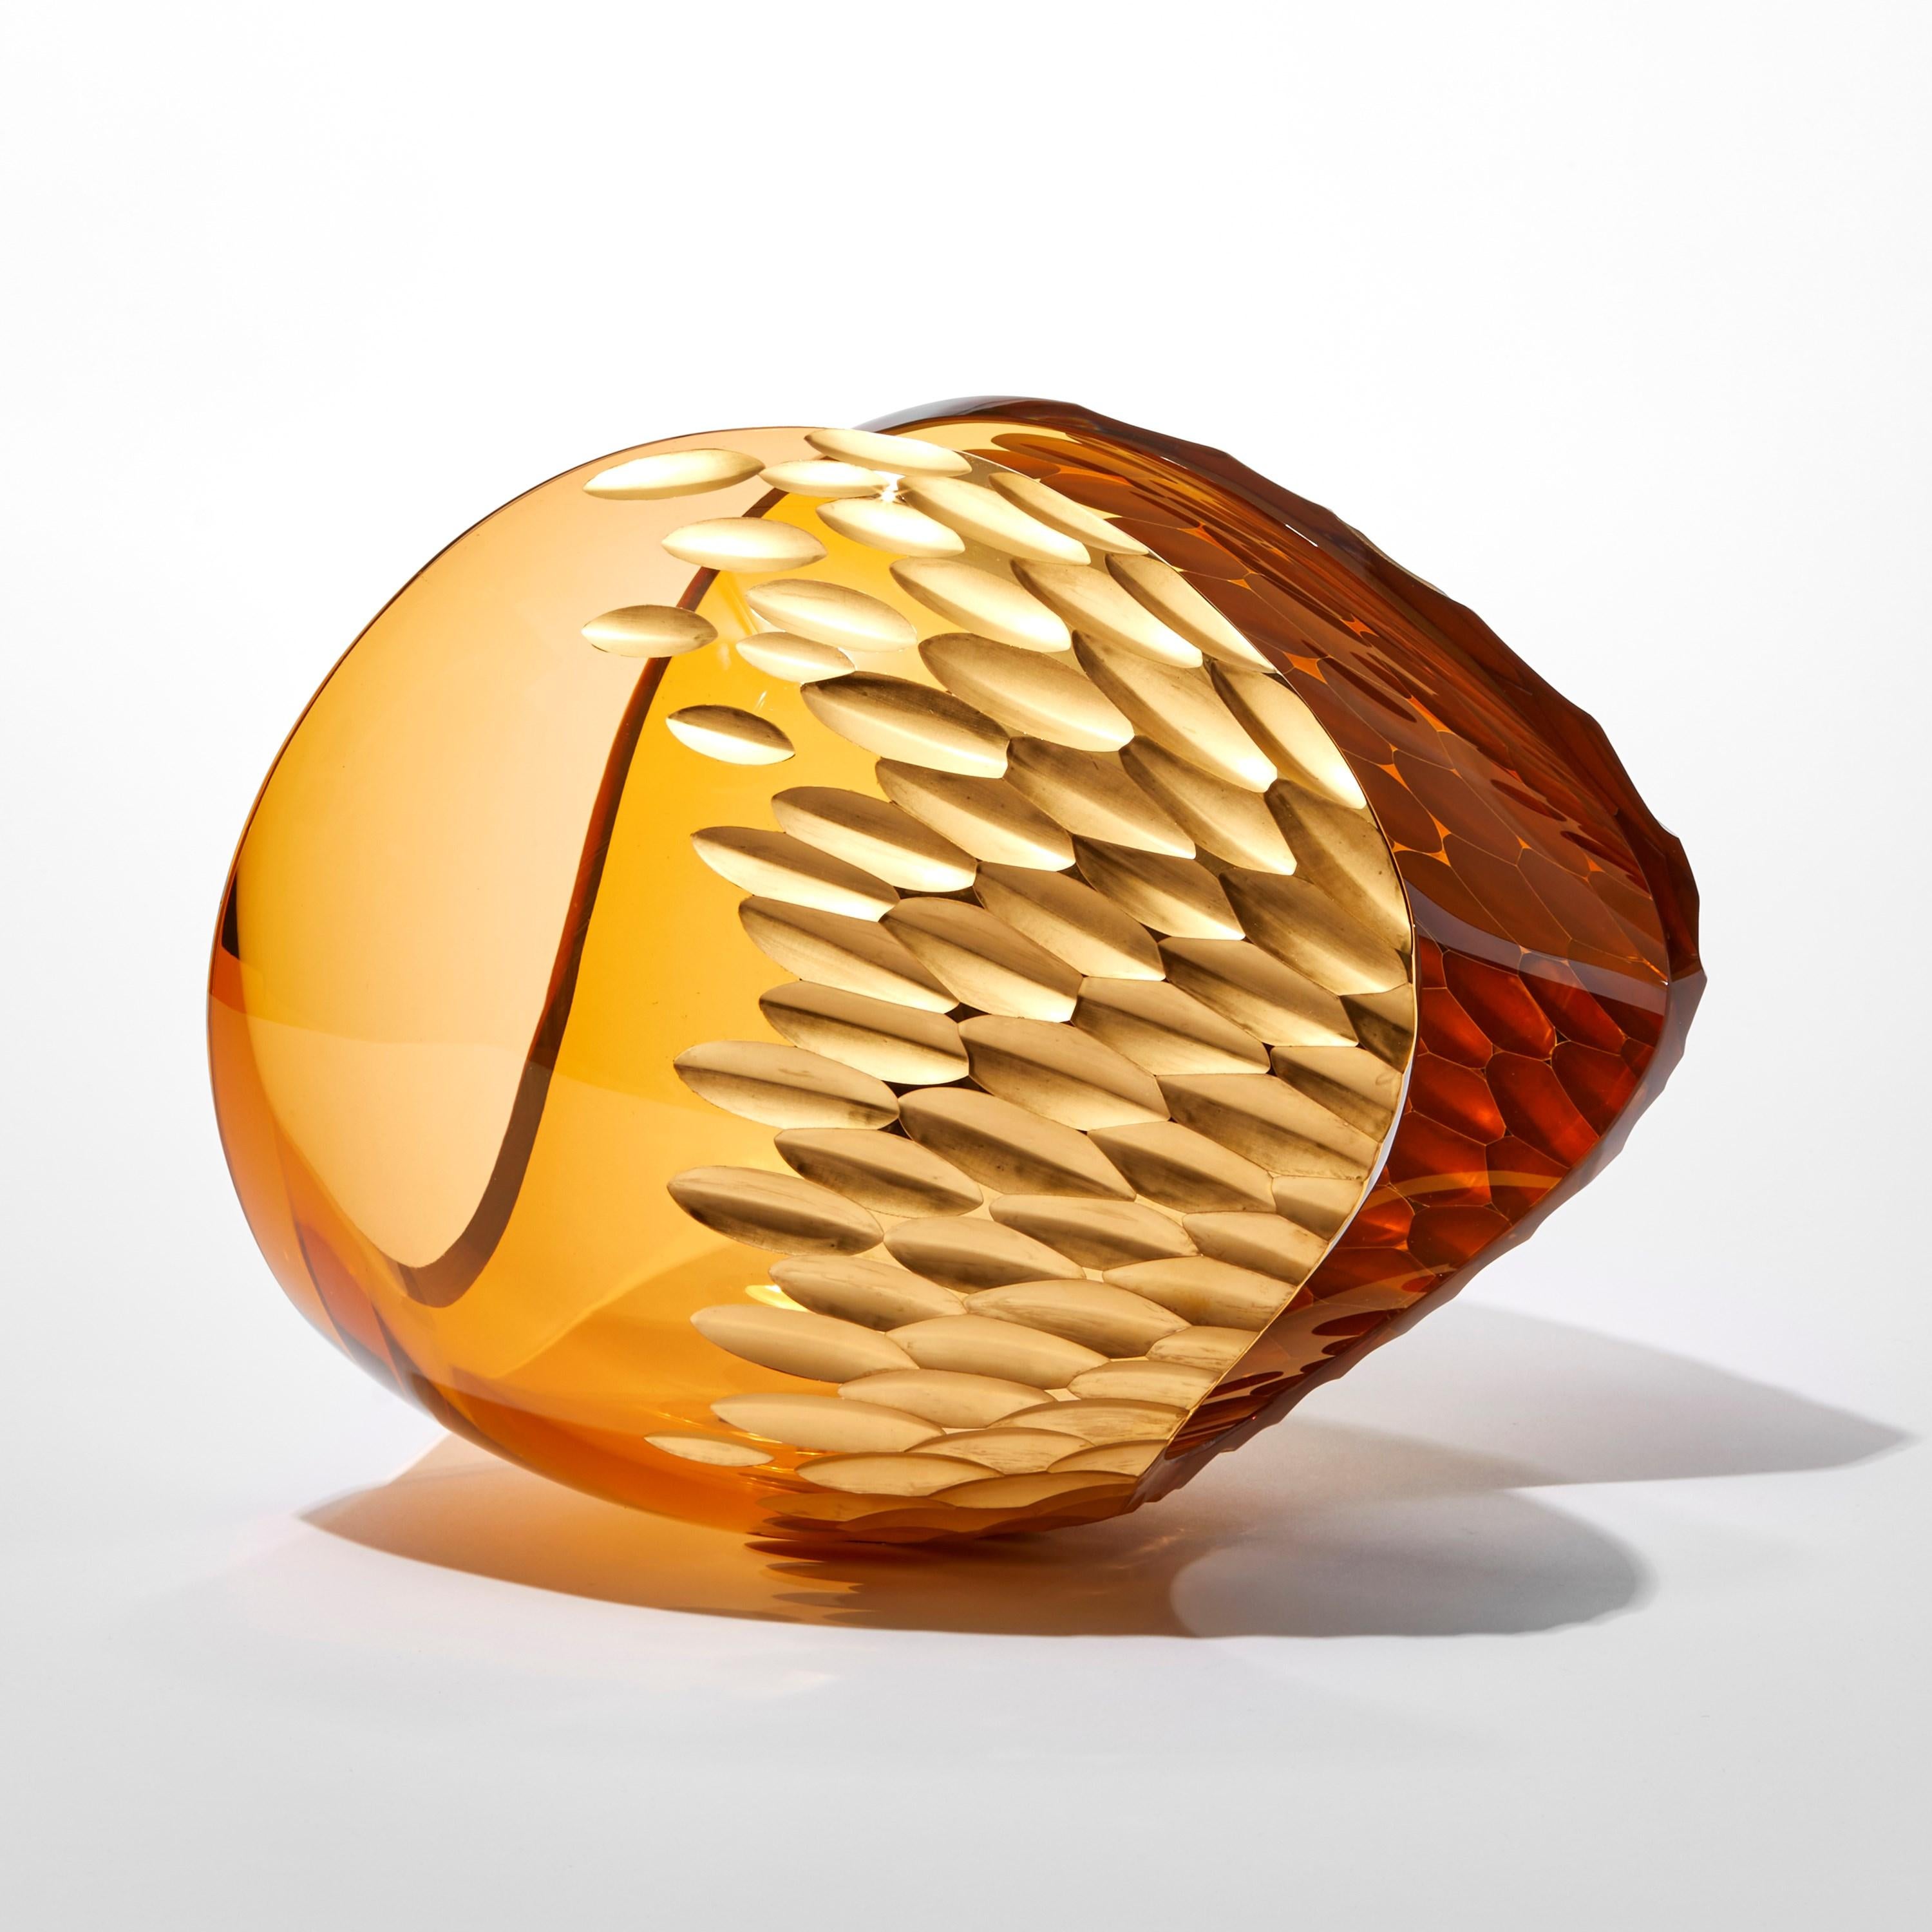 Organic Modern Planet in Amber Gold, a handblown glass & 23 ct gold sculpture by Lena Bergström